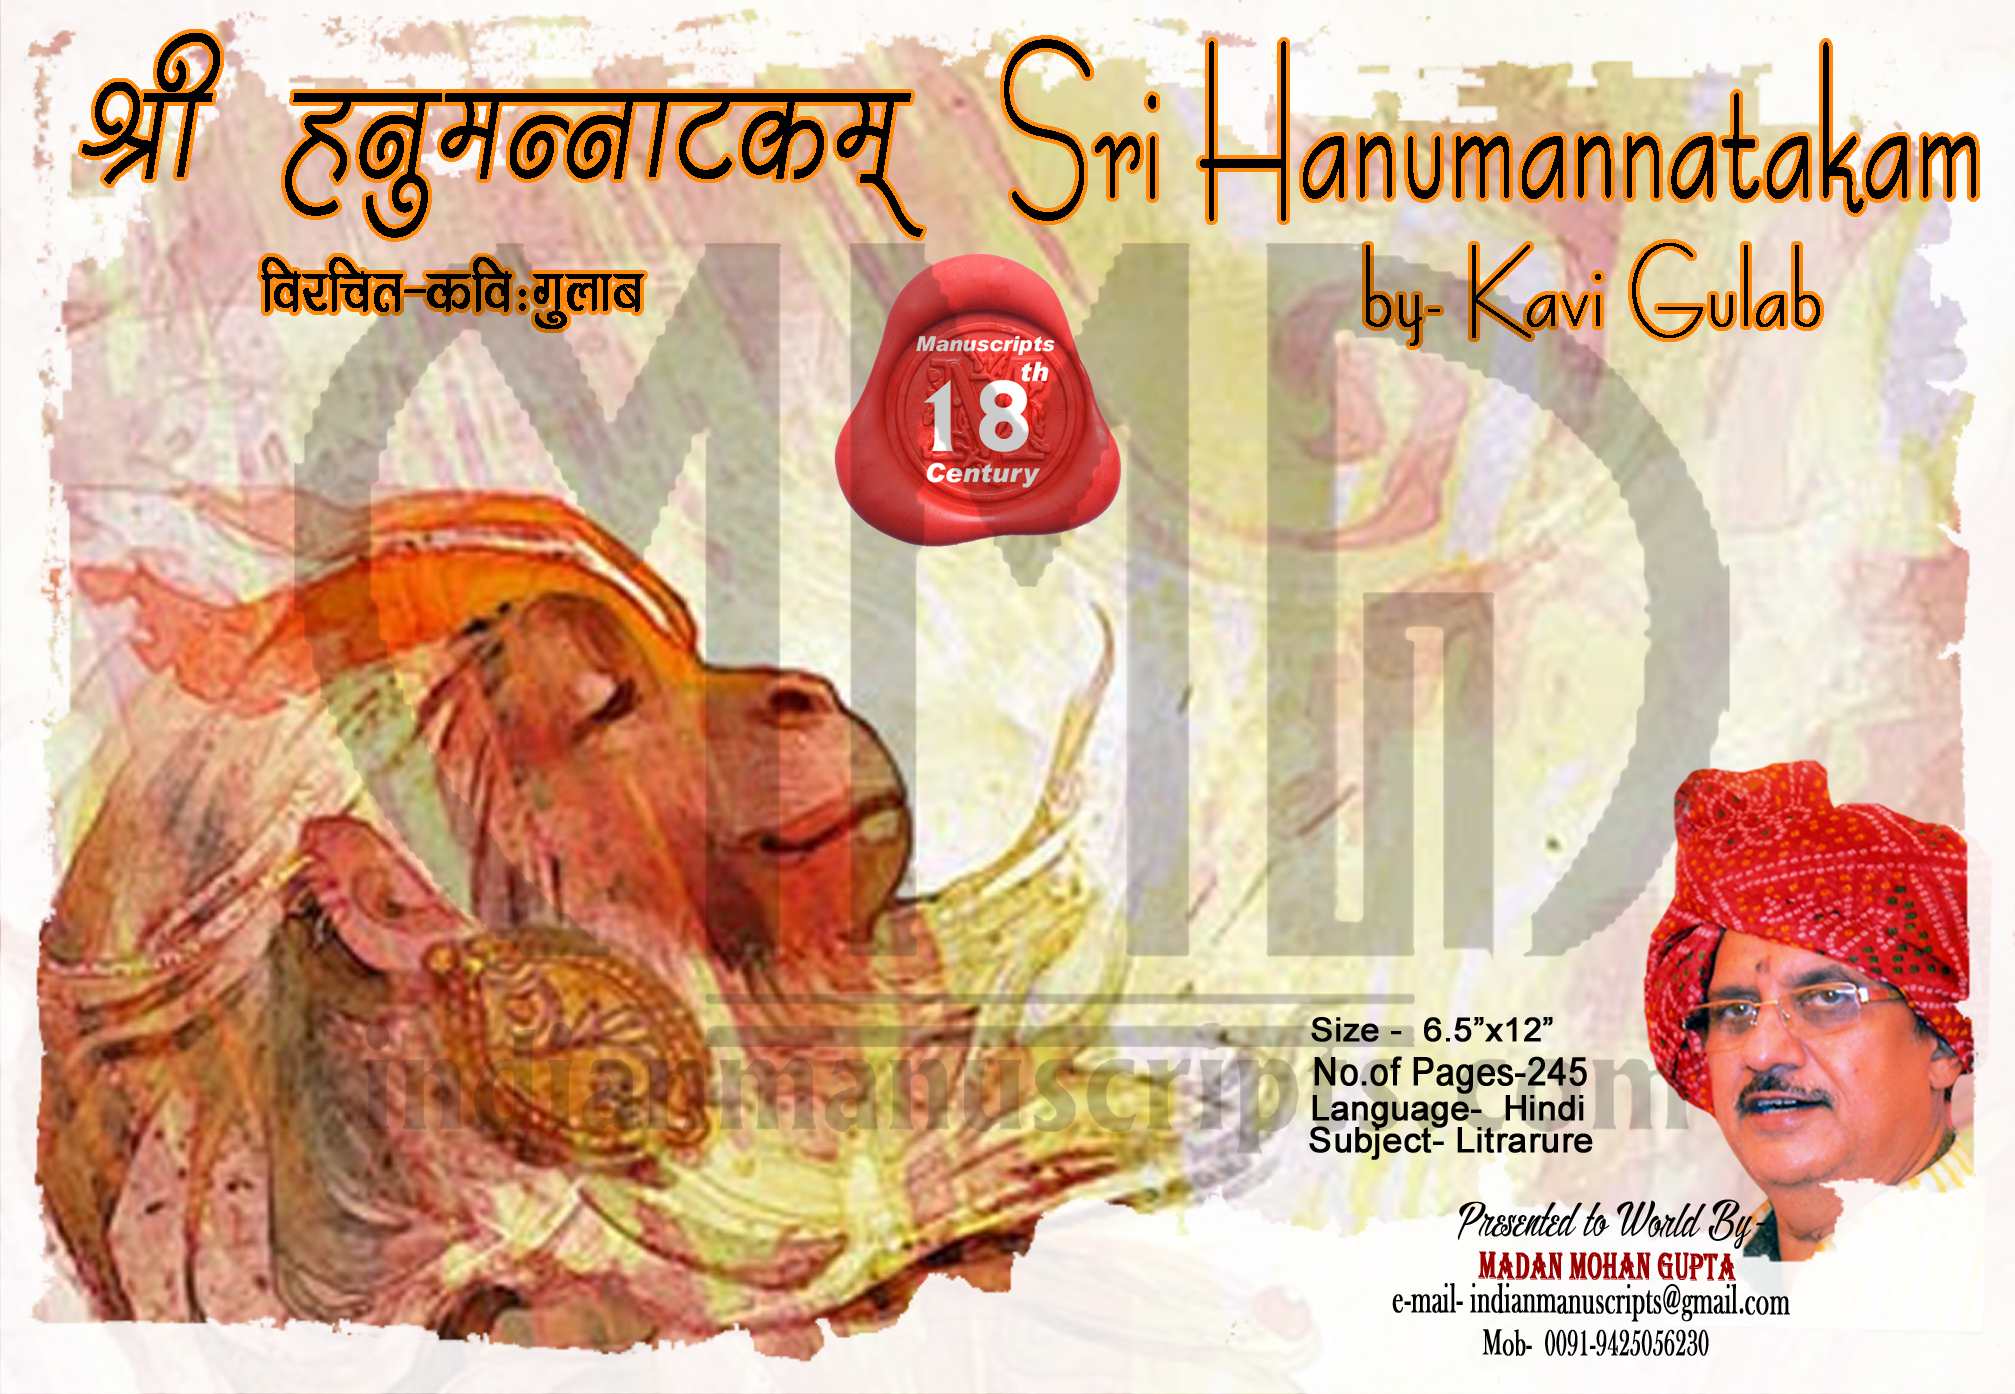 Sri Hanumannatakam